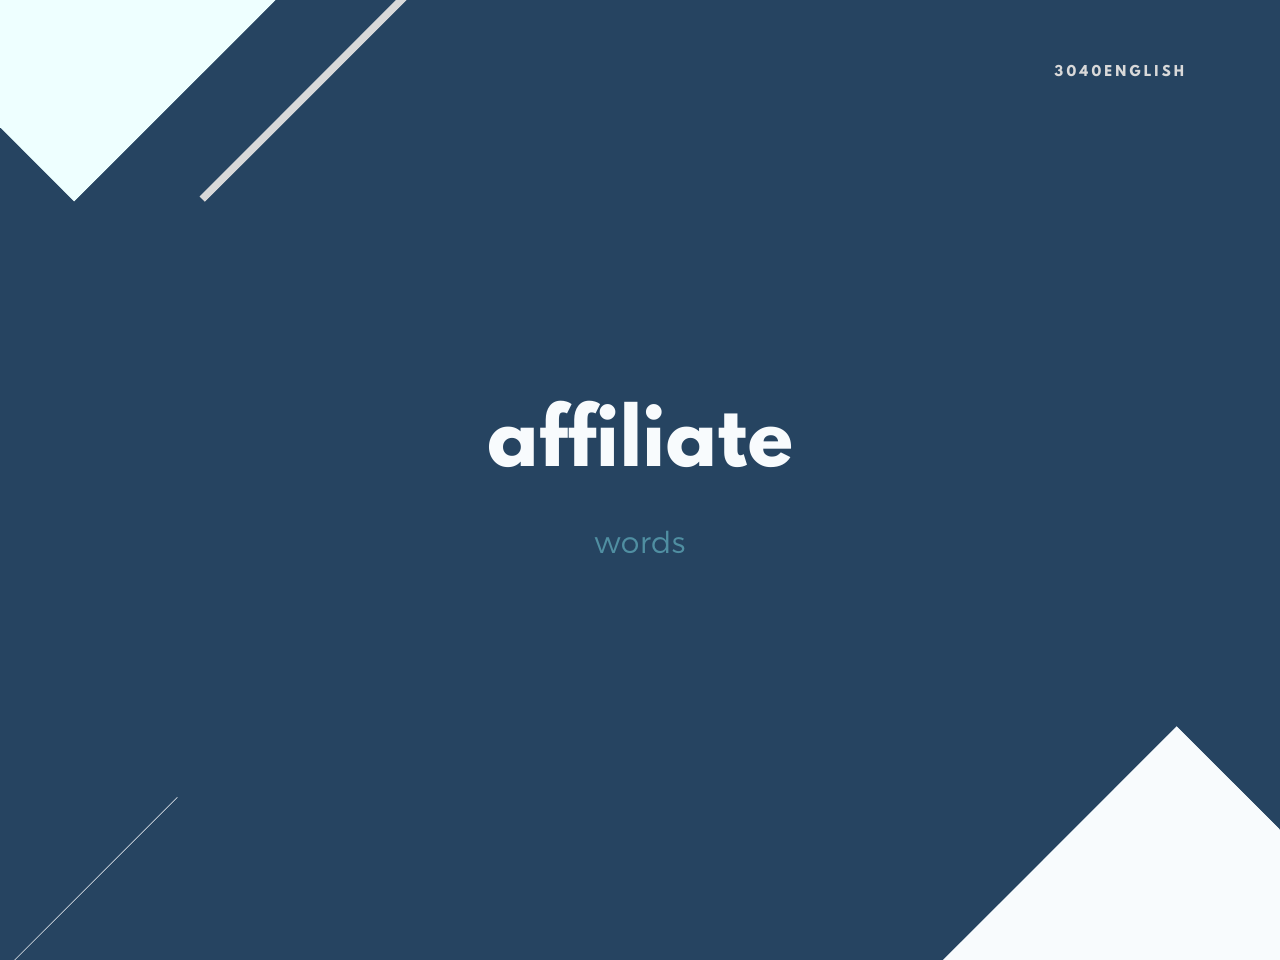 【アフィリエイト】affiliate の意味と簡単な使い方【英語表現・例文あり】